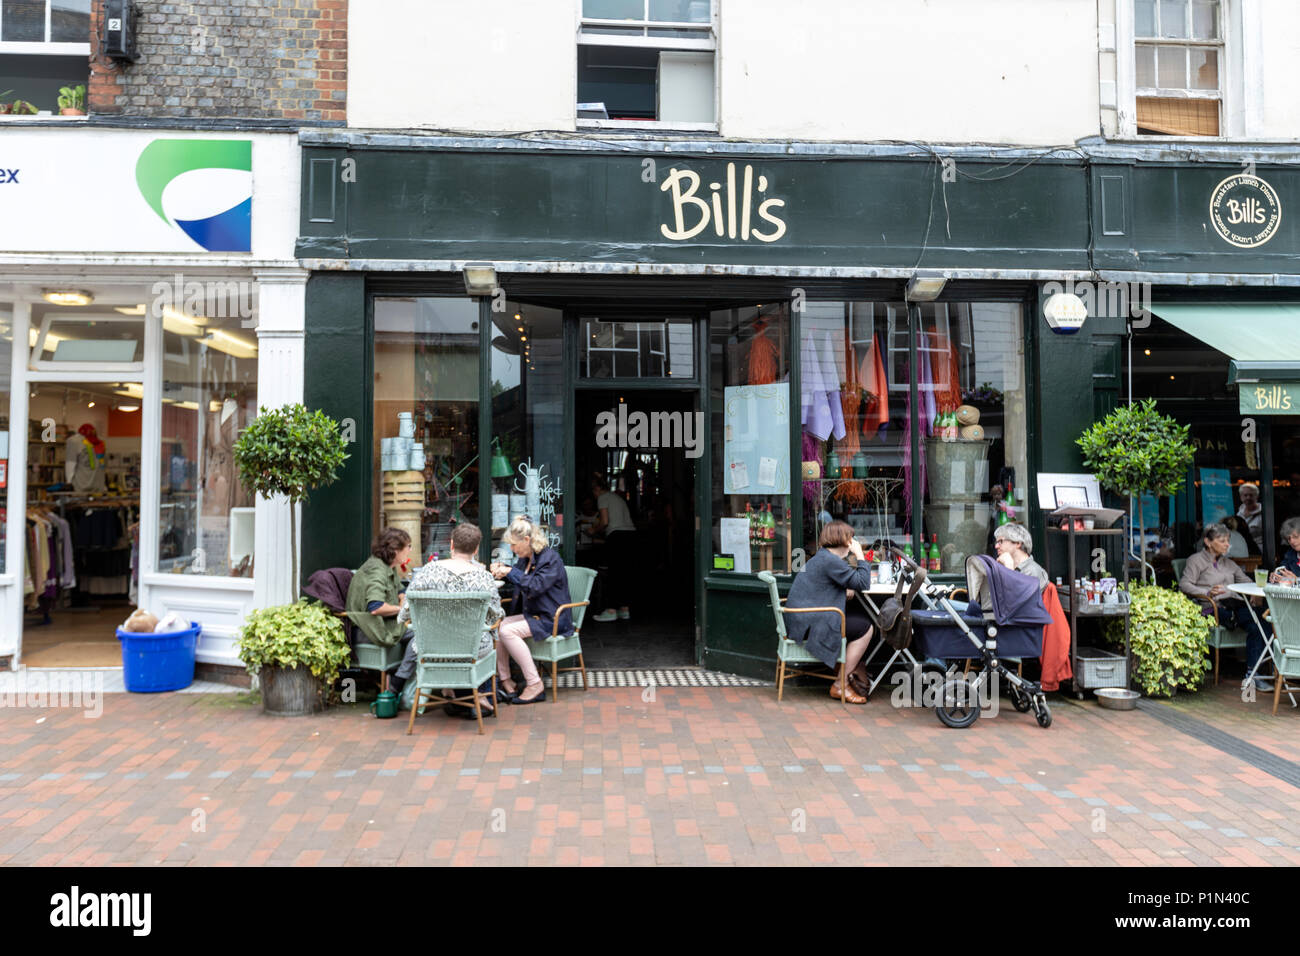 Bill's Restaurant Lewes Cliffe dans High Street, une rue très beaux magasins et de navigation, Lewes, East Sussex, England, UK Banque D'Images